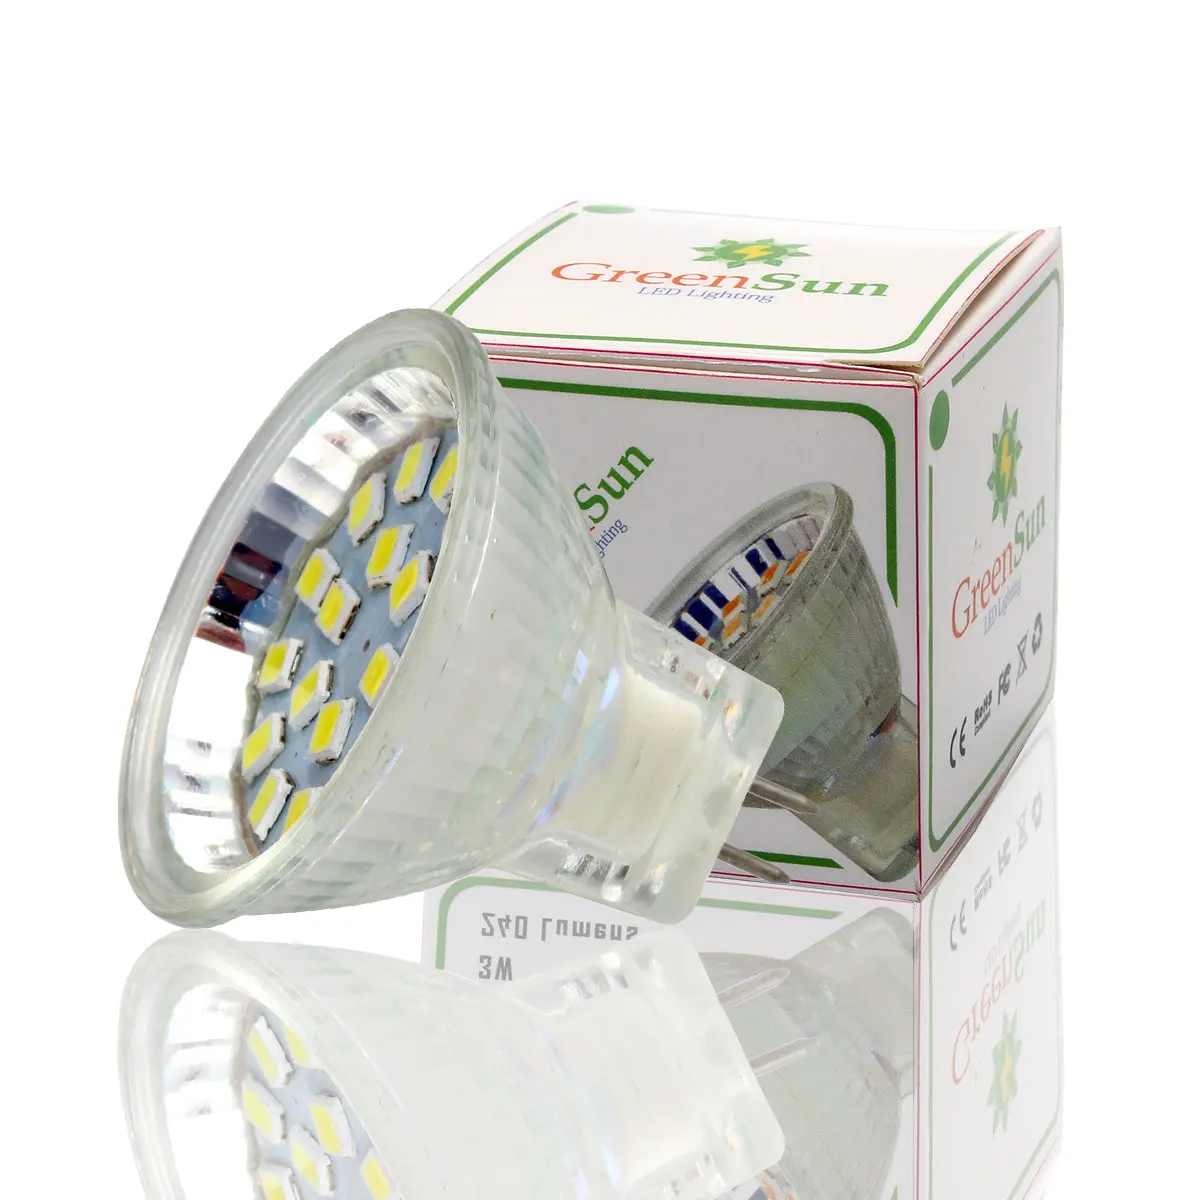 GreenSun 5 шт. Набор 2,5 Вт 3 Вт MR11 Светодиодный точечный светильник GU4 светодиодный светильник 2835 SMD энергосберегающий Светодиодный точечный светильник Холодный/теплый белый